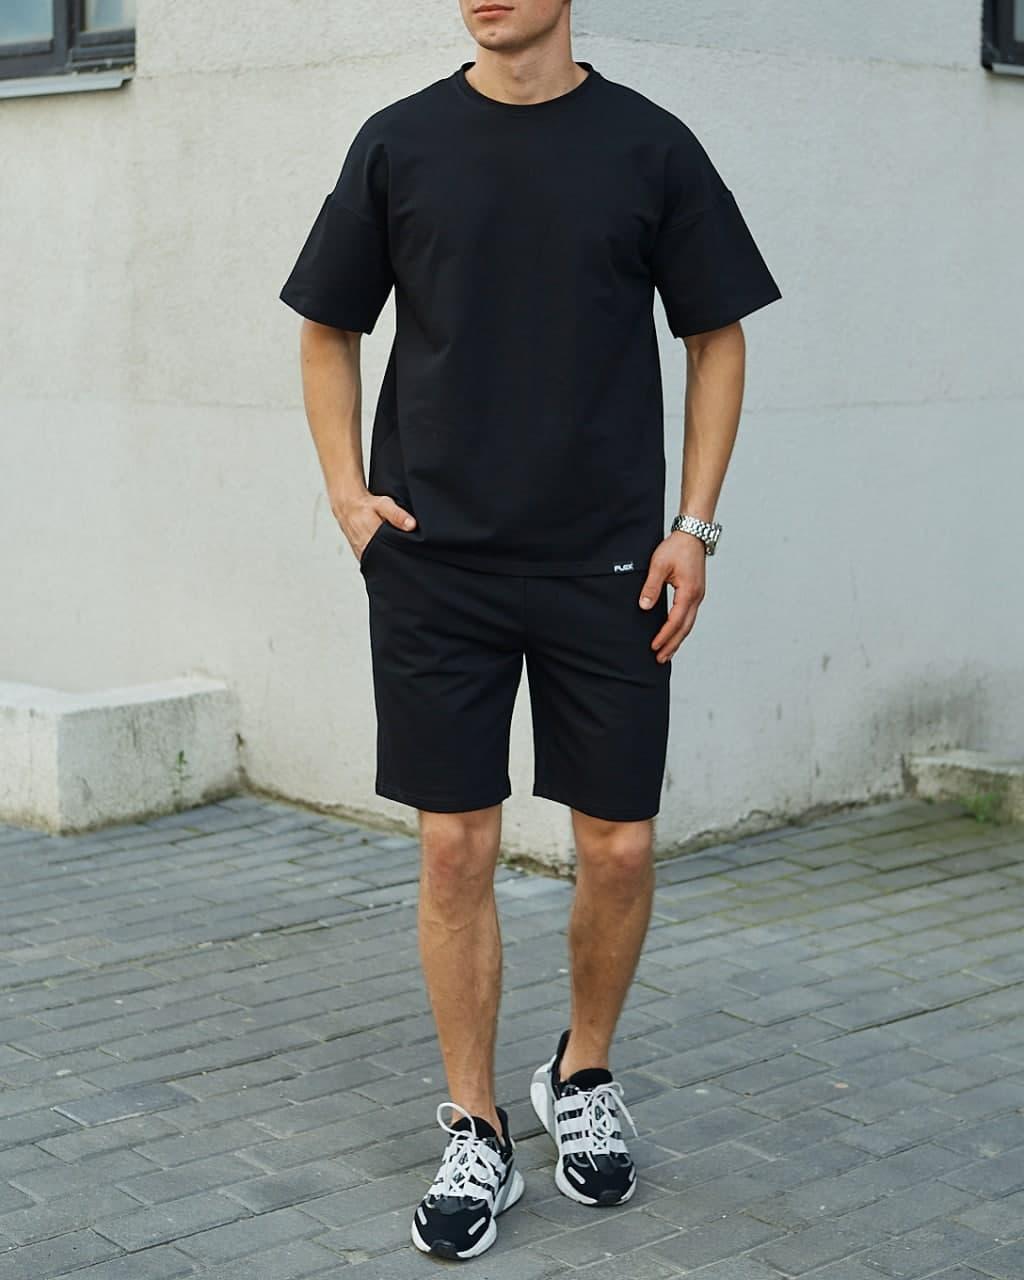 Літній комплект чорна футболка чоловіча Quil (Квіл) чорні шорти чоловічі Duncan (Дункан) TURWEAR - Фото 5